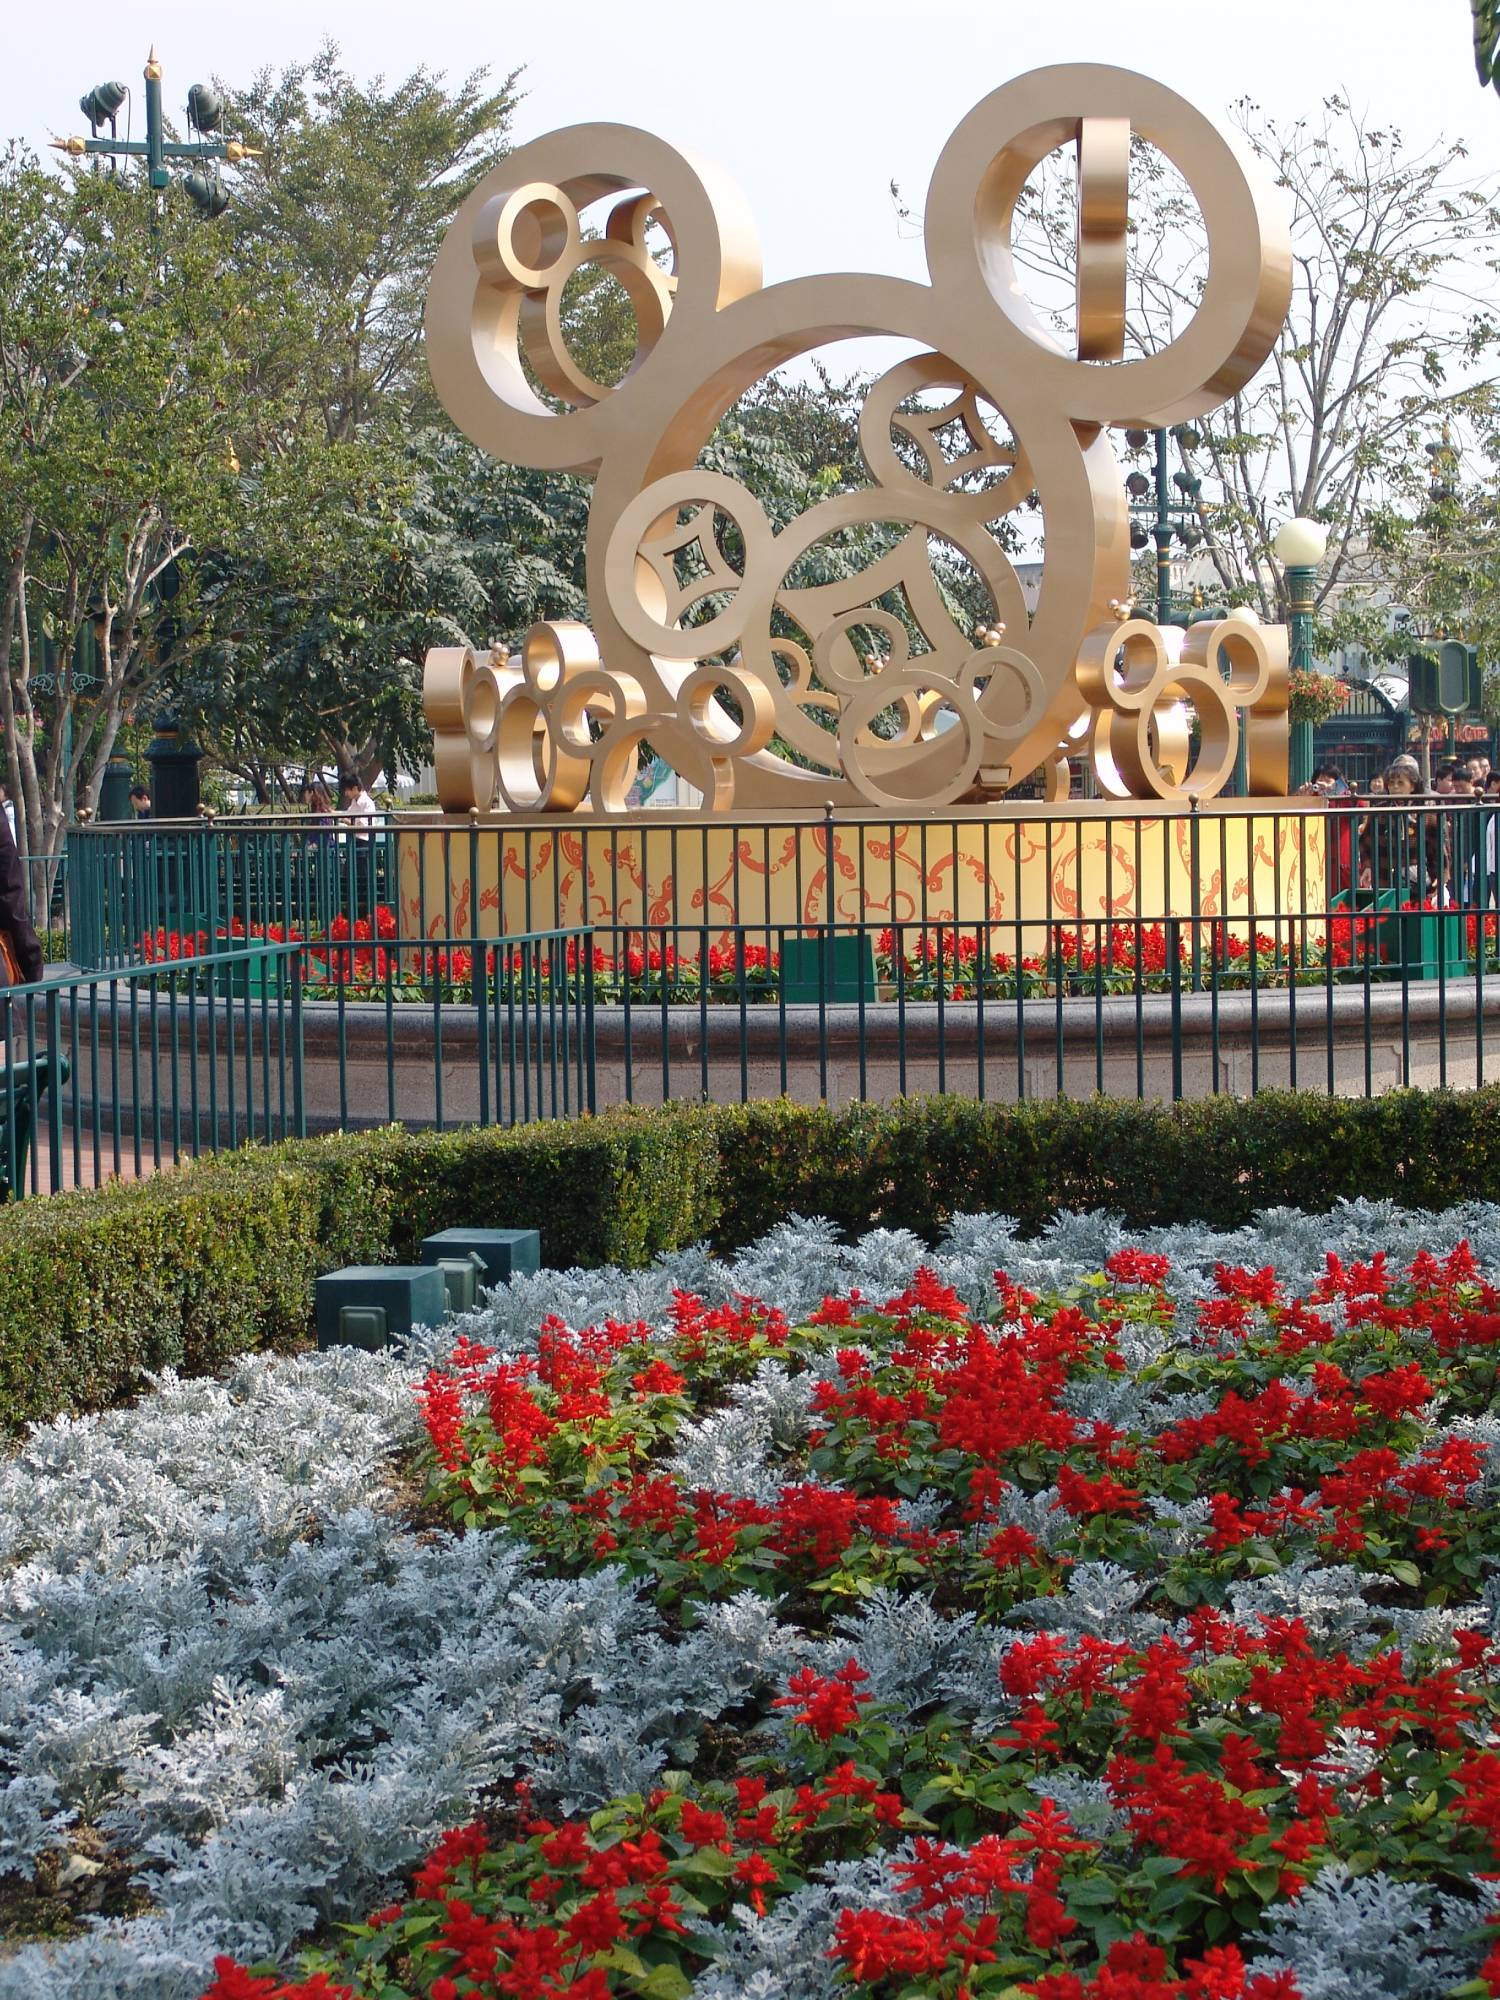 Hong Kong Disneyland - Chinese New Year decorations